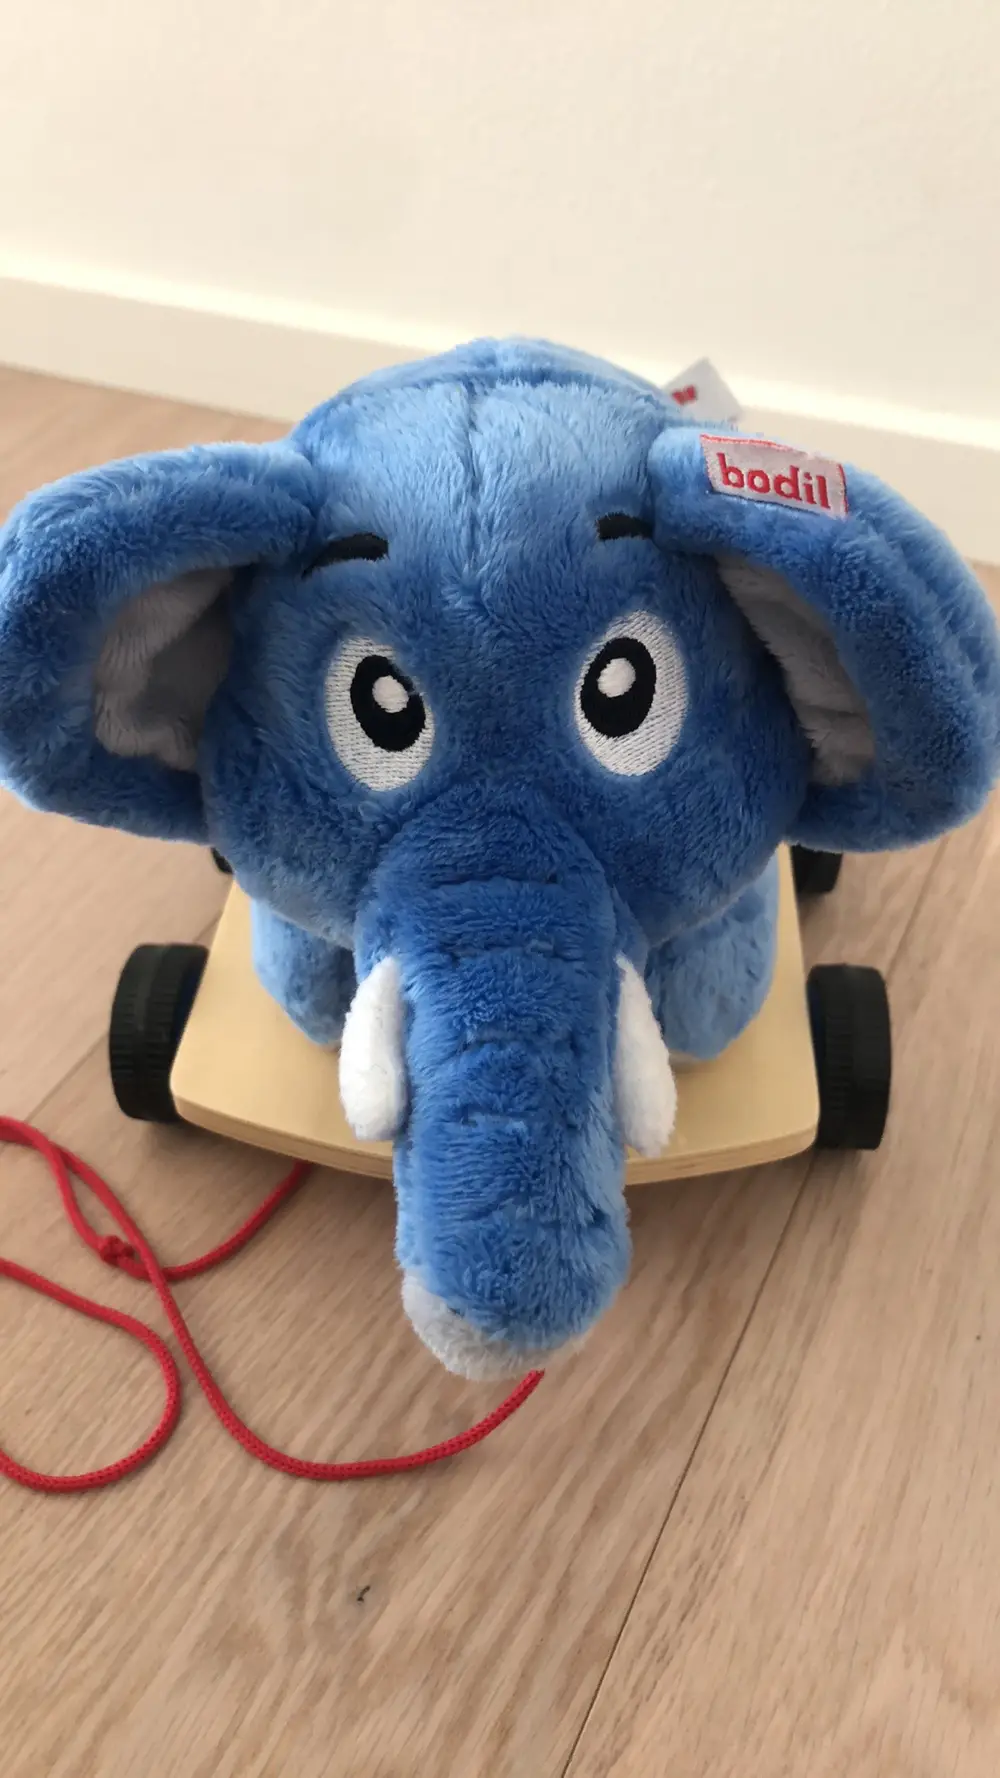 KREA Bodil elefant på hjul af Jane Reshopper Shop til børn, mor og bolig